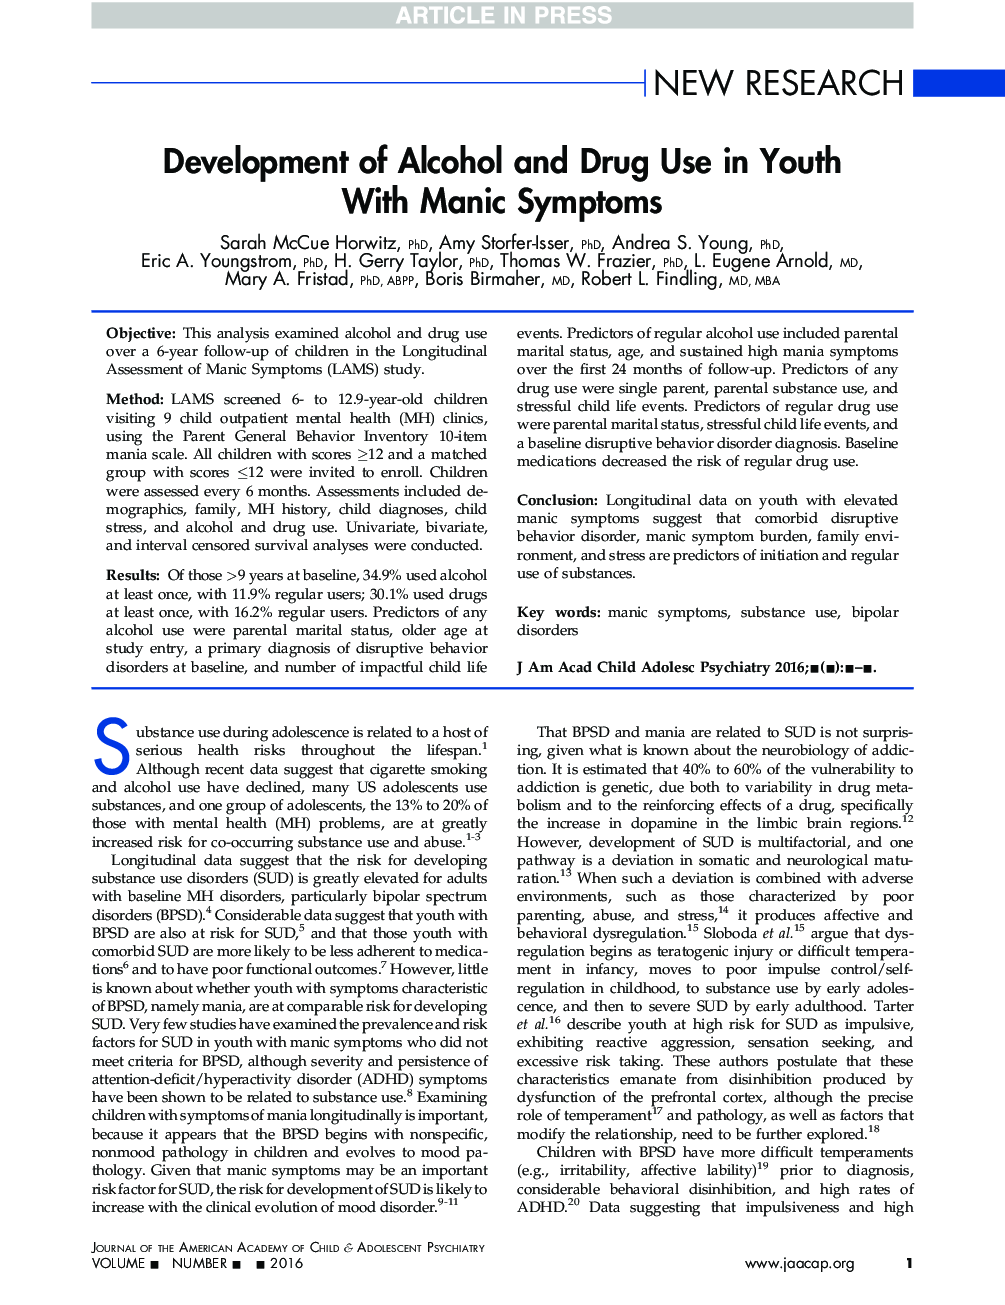 توسعه الکل و مصرف مواد مخدر در جوانان با نشانه های مانیک 